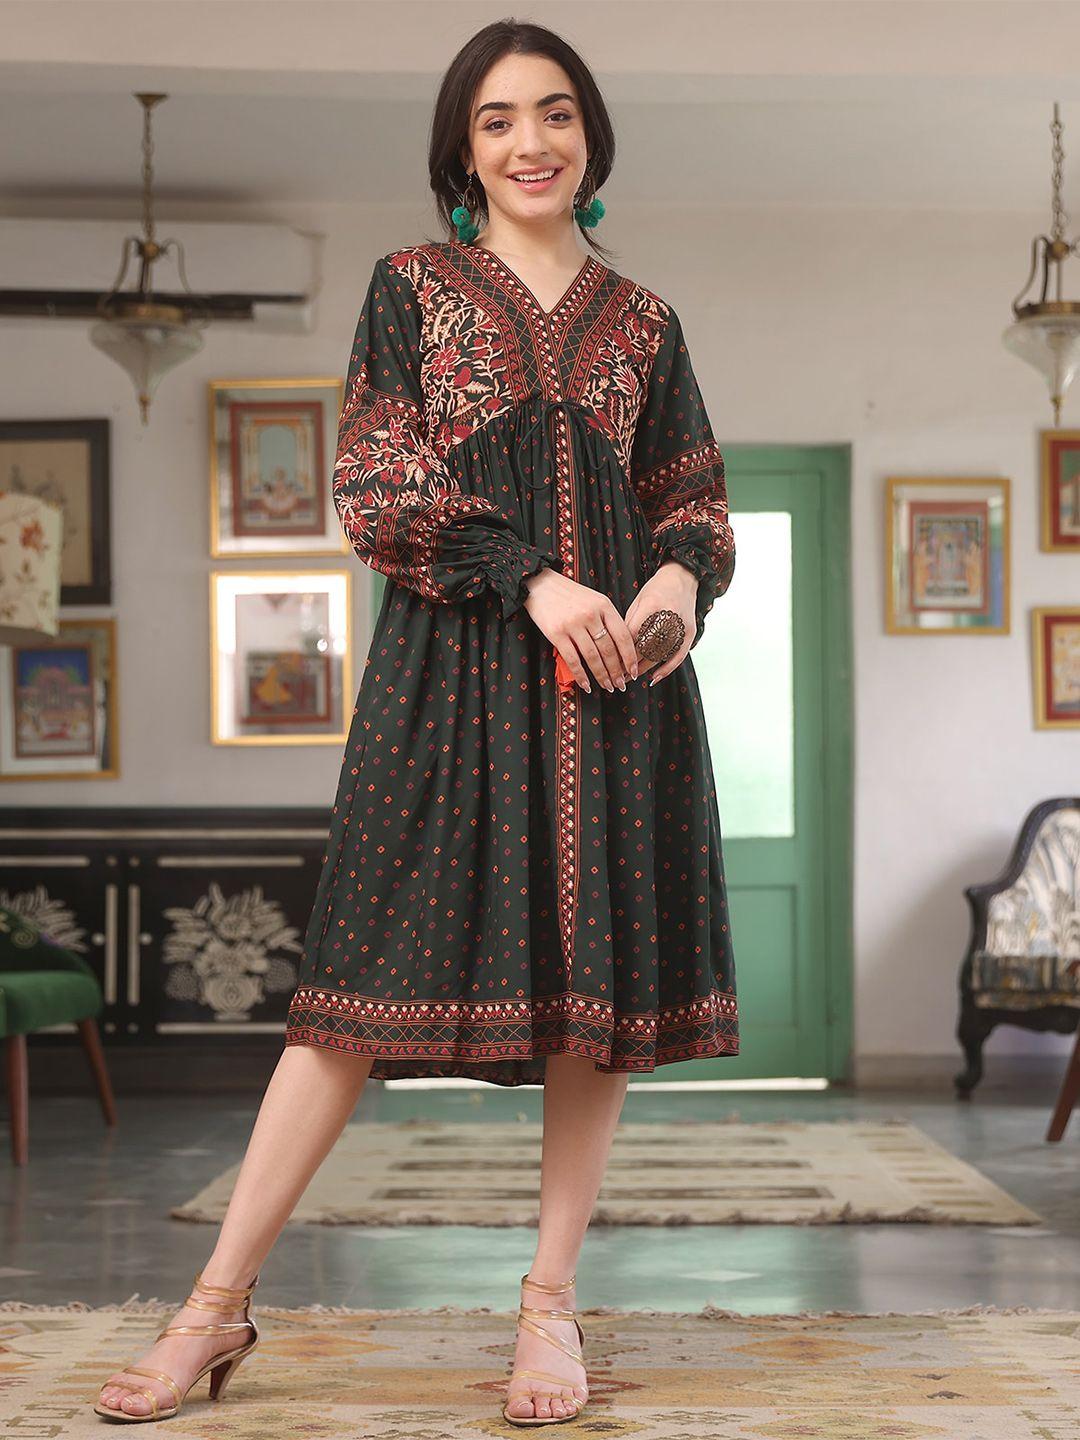 rustorange print a-line ethnic dress